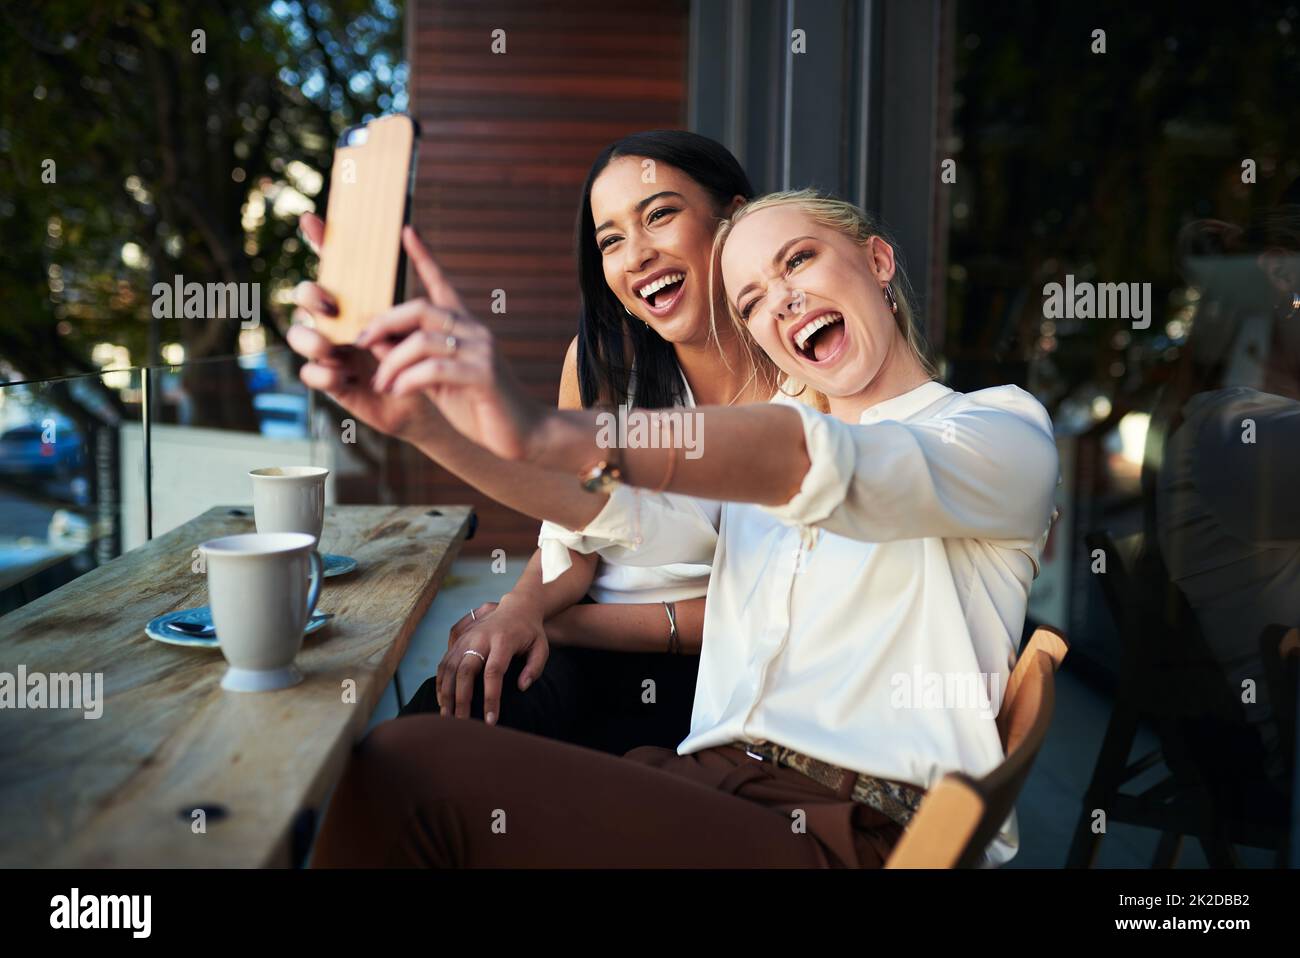 Les selfies du café-restaurant sont les meilleurs. Photo de deux jeunes femmes prenant un selfie tout en s'asseyant dans un café. Banque D'Images